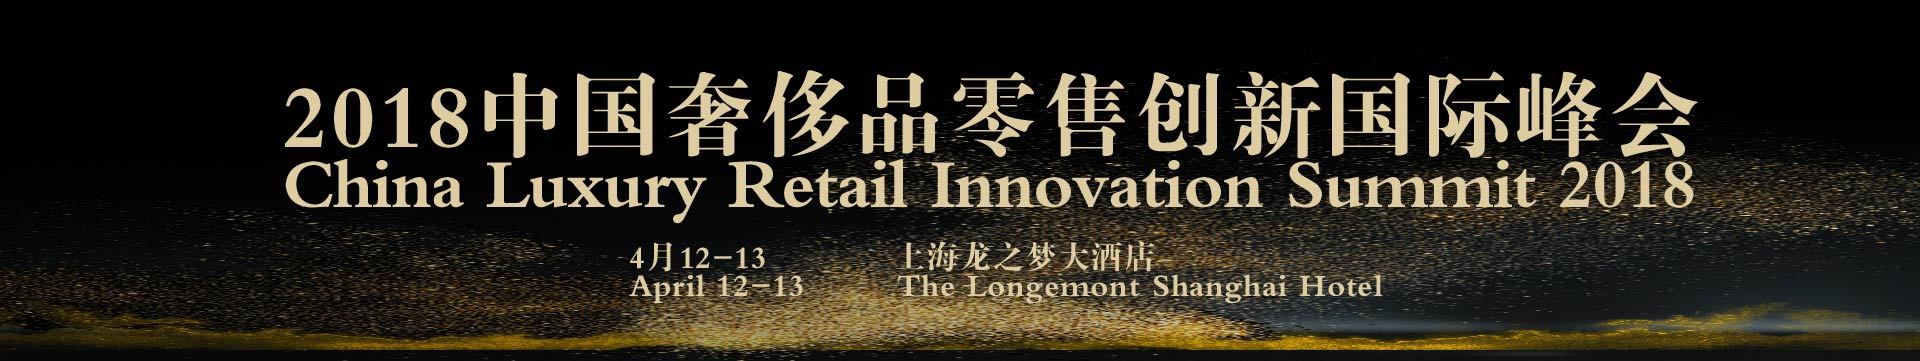 2018中国奢侈品零售创新国际峰会